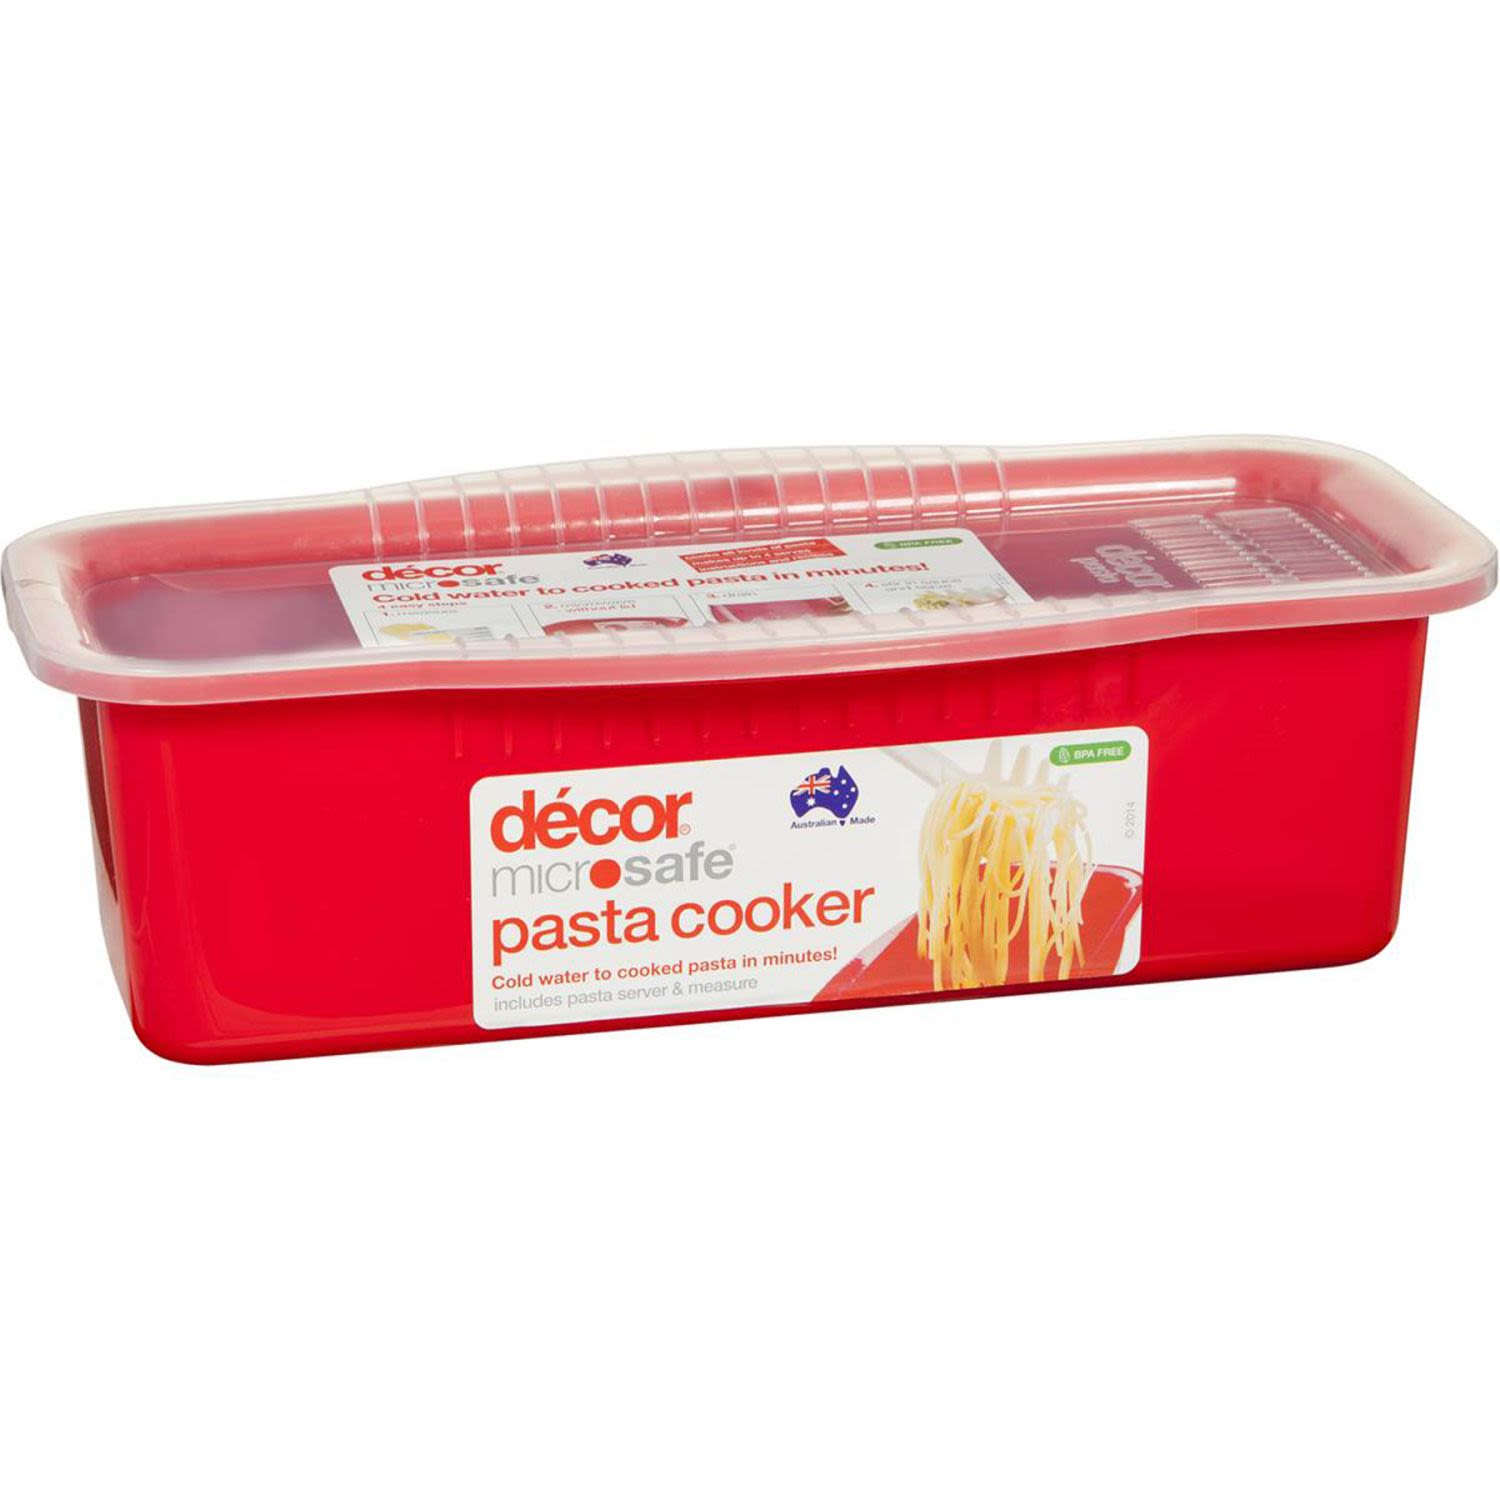 Decor Microsafe Pasta Cooker, 1 Each